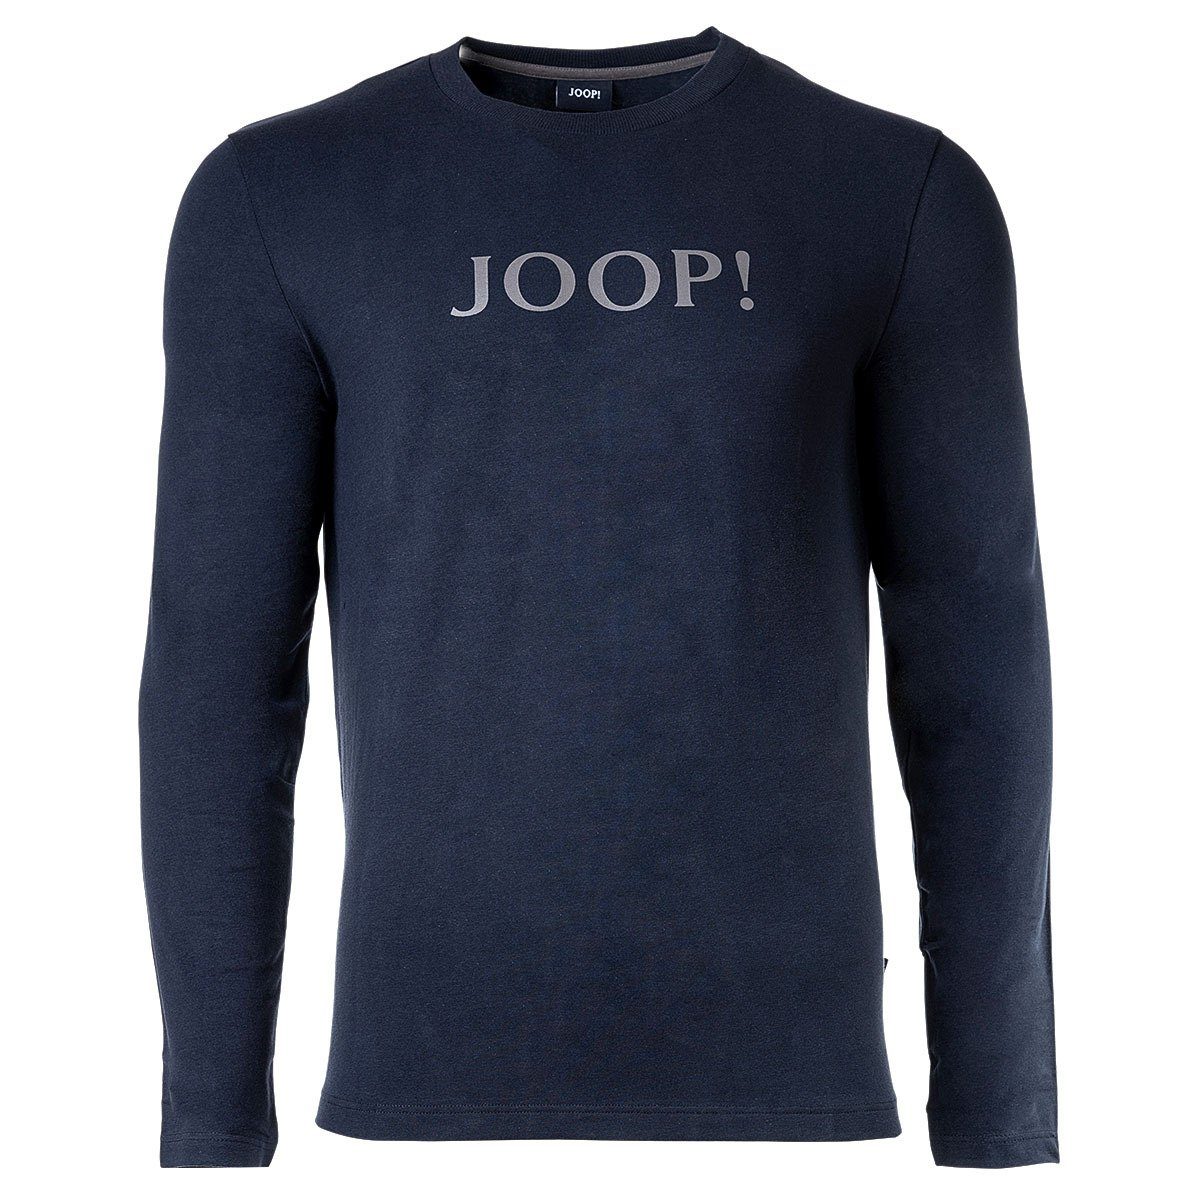 Joop! T-Shirt Herren Langarm-Shirt - Loungewear, Rundhals Blau